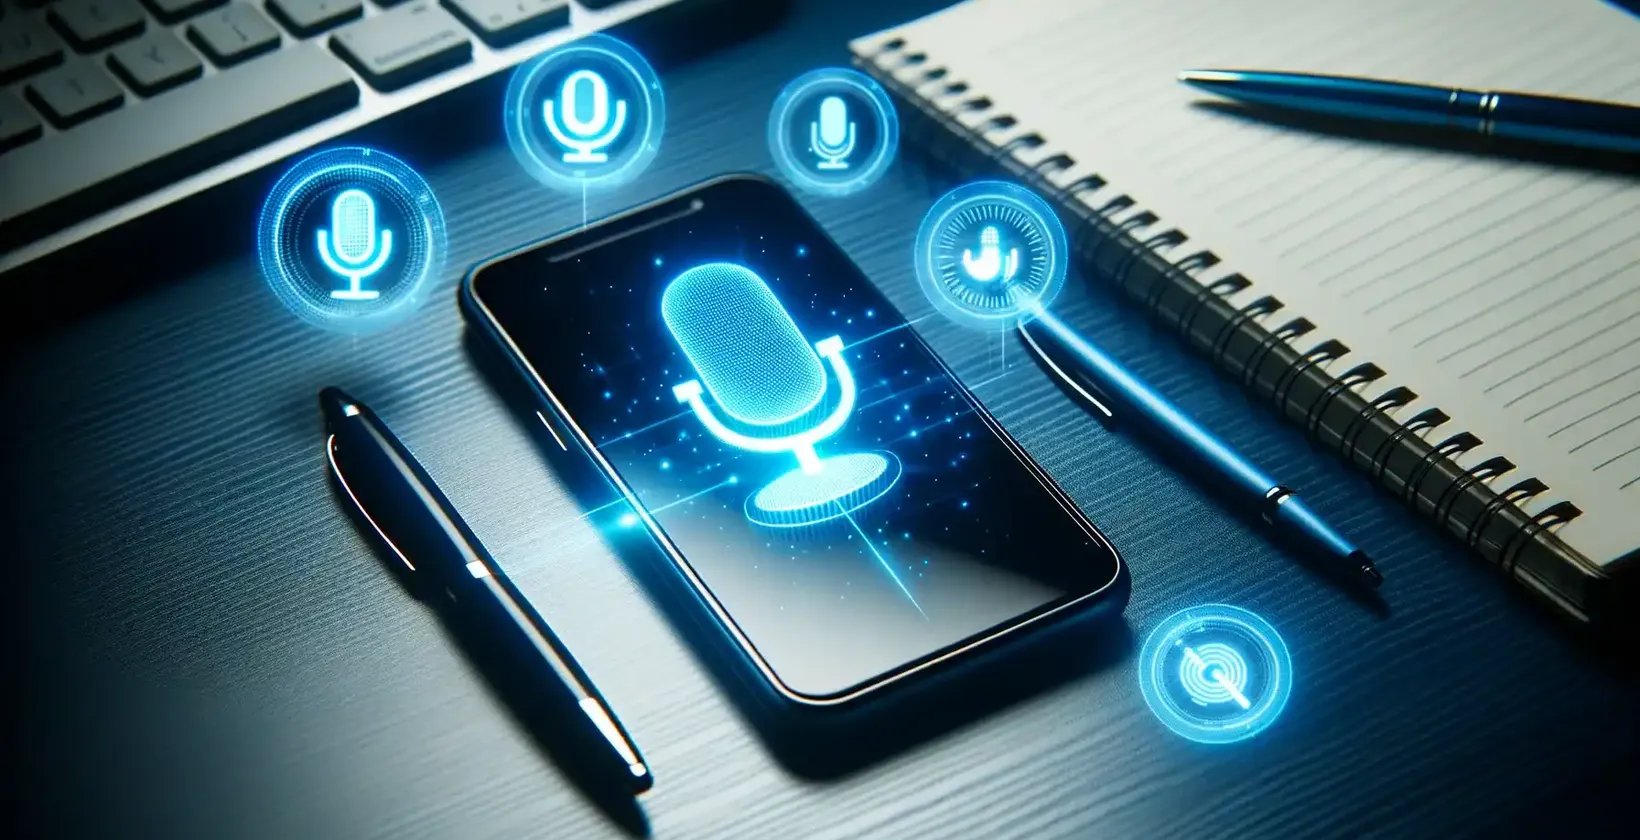 Añadir texto a un vídeo en dispositivos Samsung ilustrado por un smartphone Samsung que muestra símbolos de comandos de voz en un escritorio